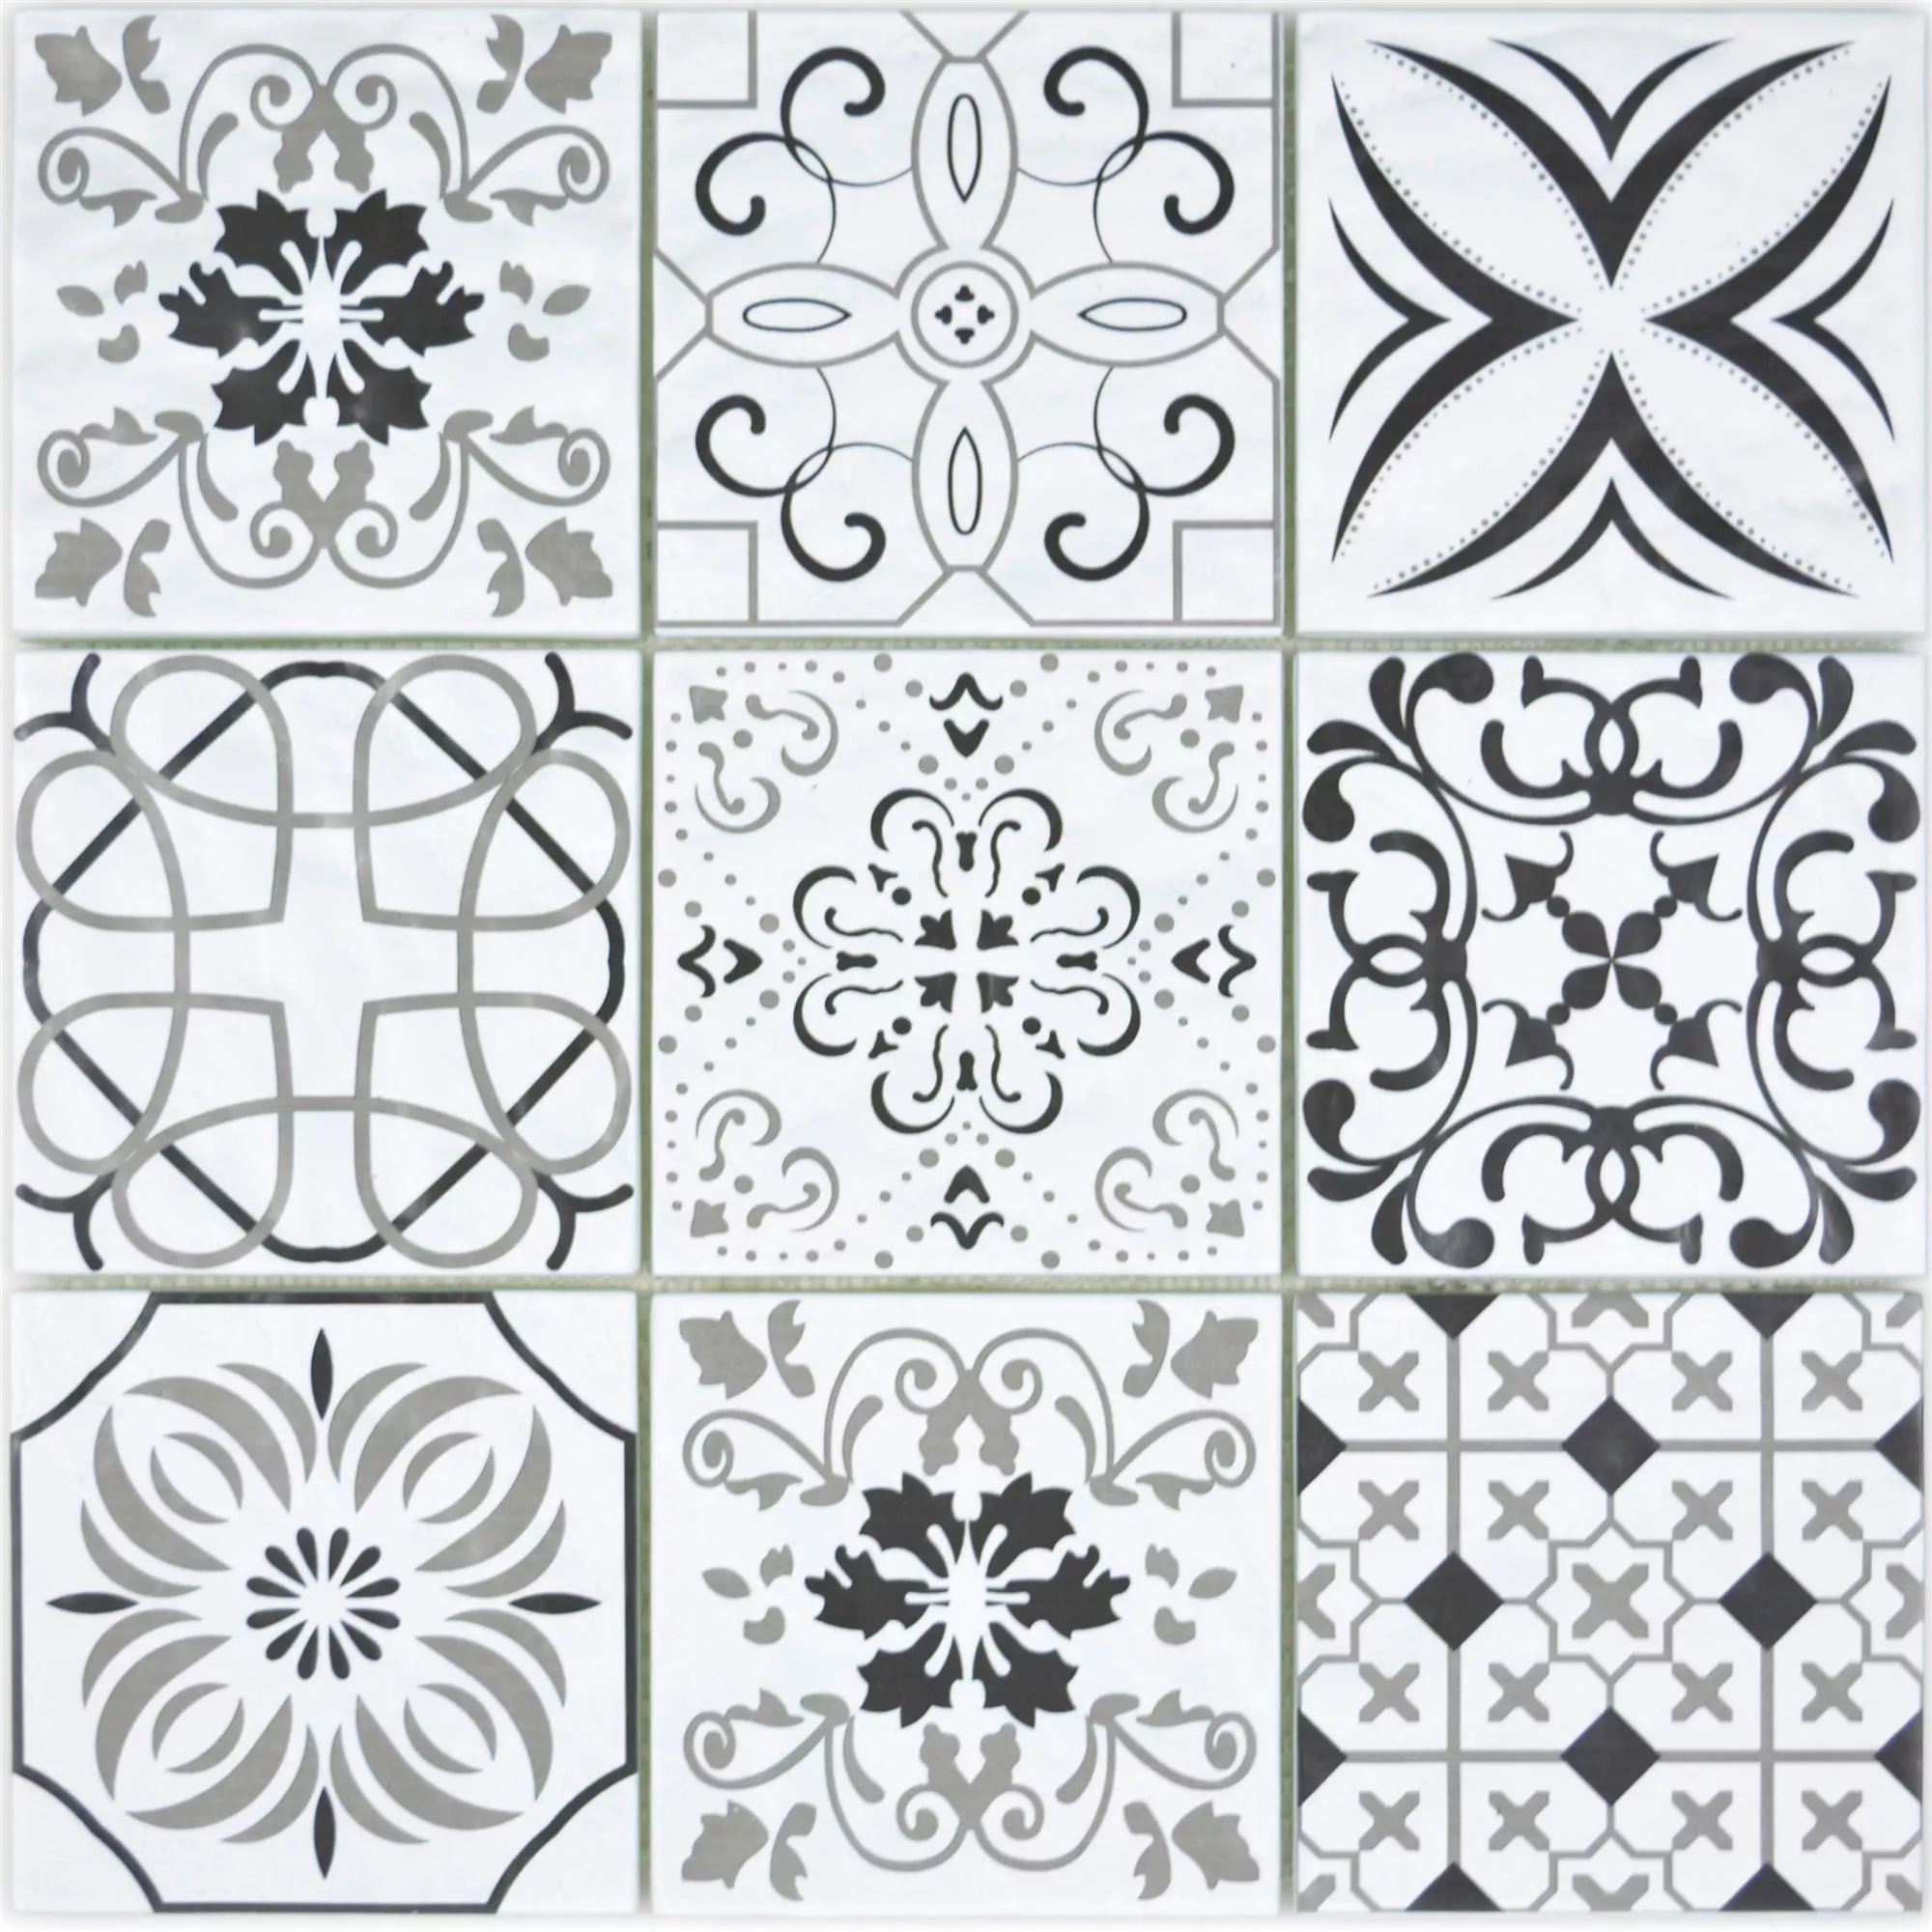 Sample Glass Mosaic Tiles Starlite Retro Black White 